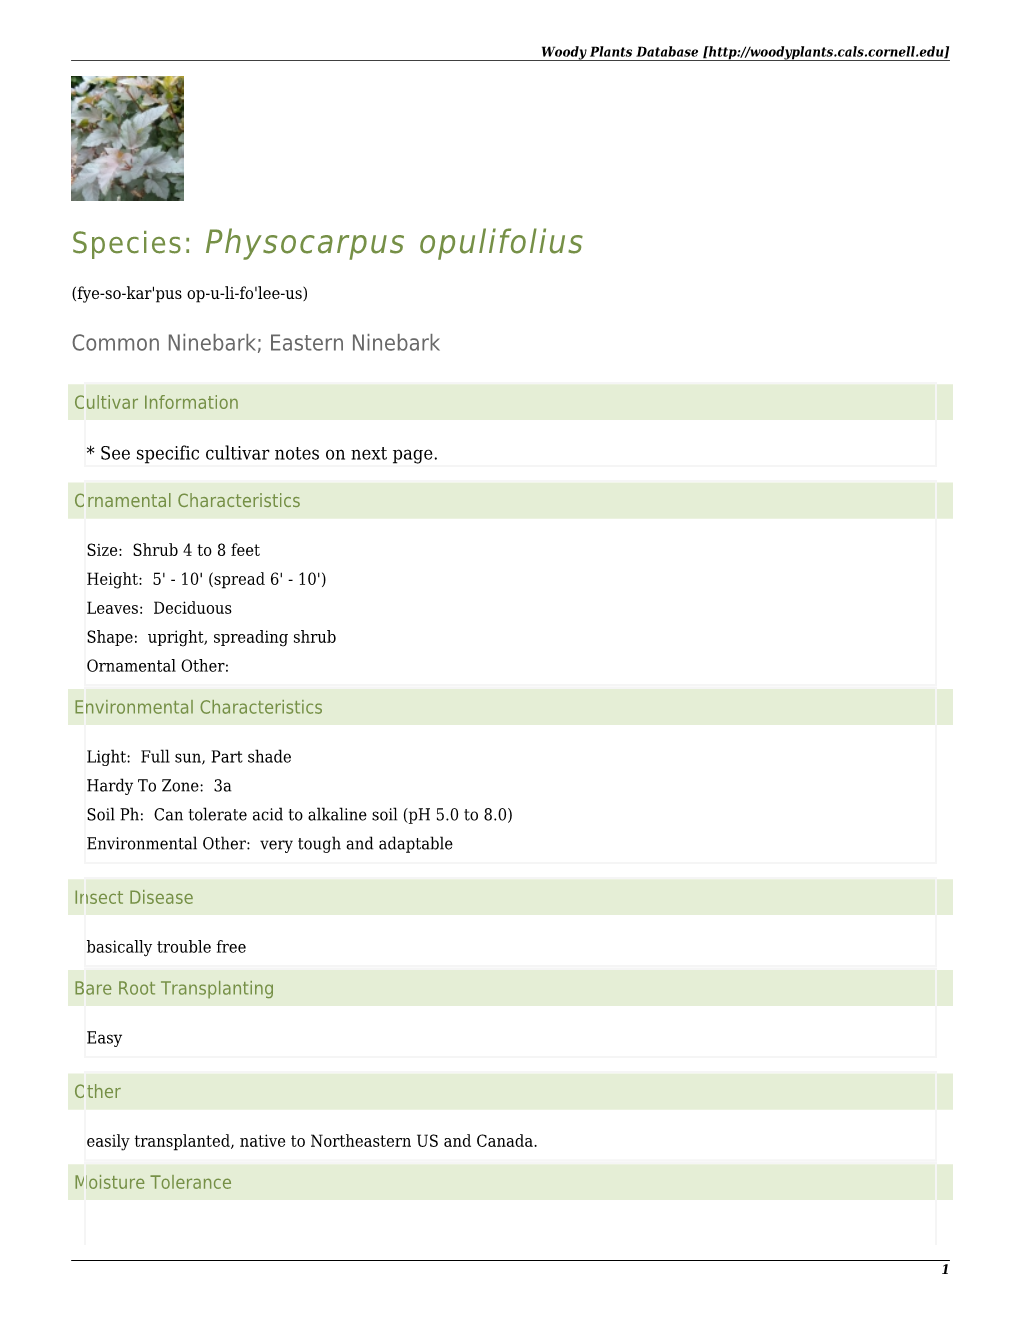 Physocarpus Opulifolius